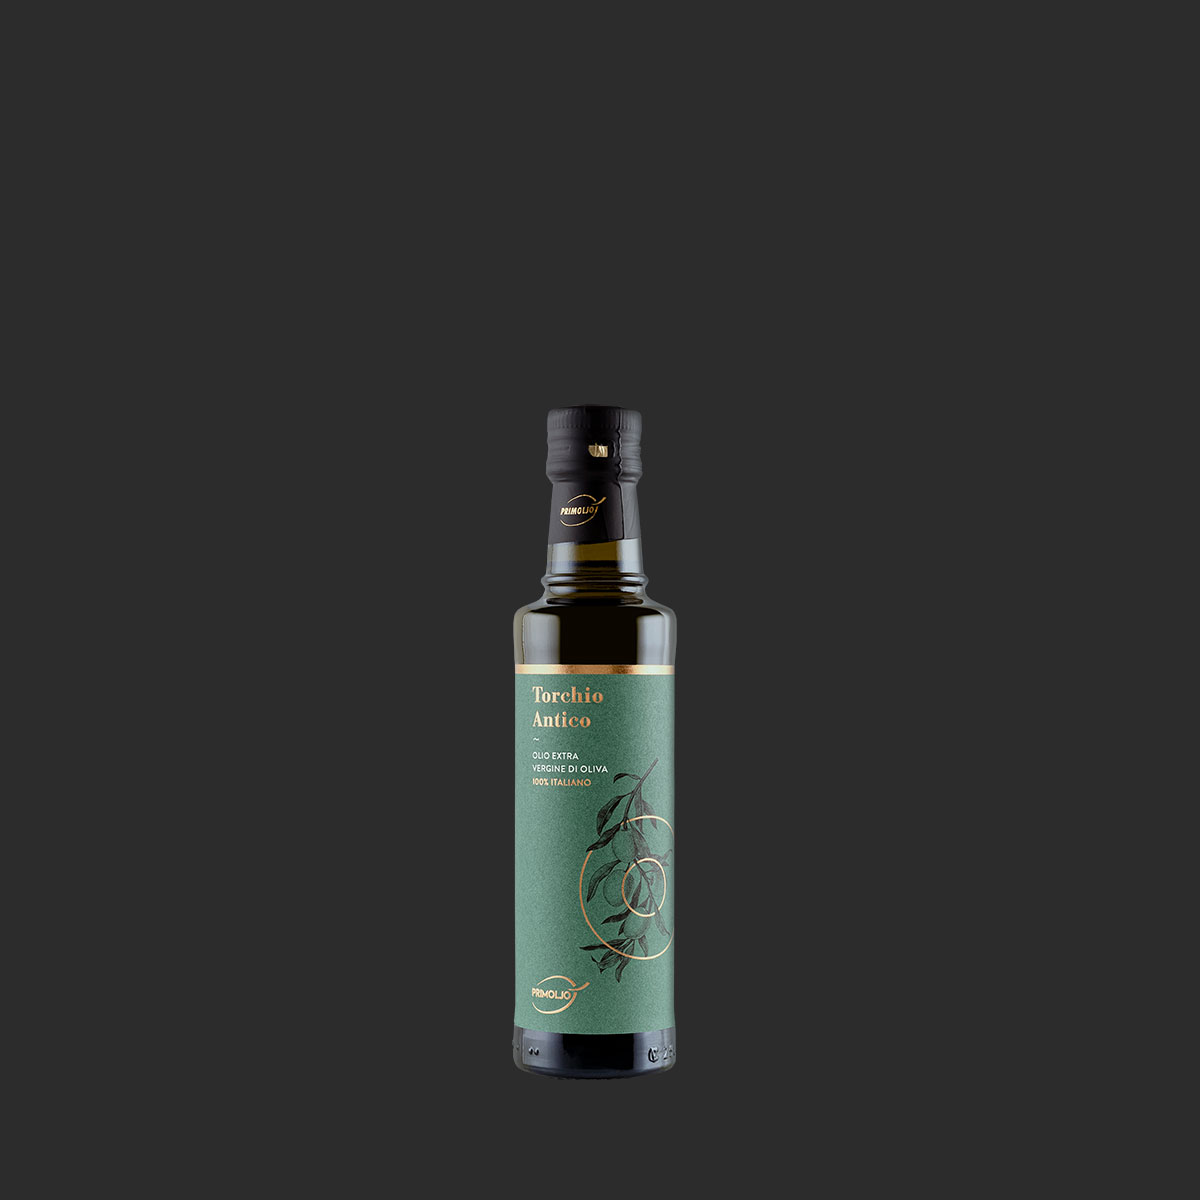 primoljo torchio antico olio di oliva in bottiglia da 200ml